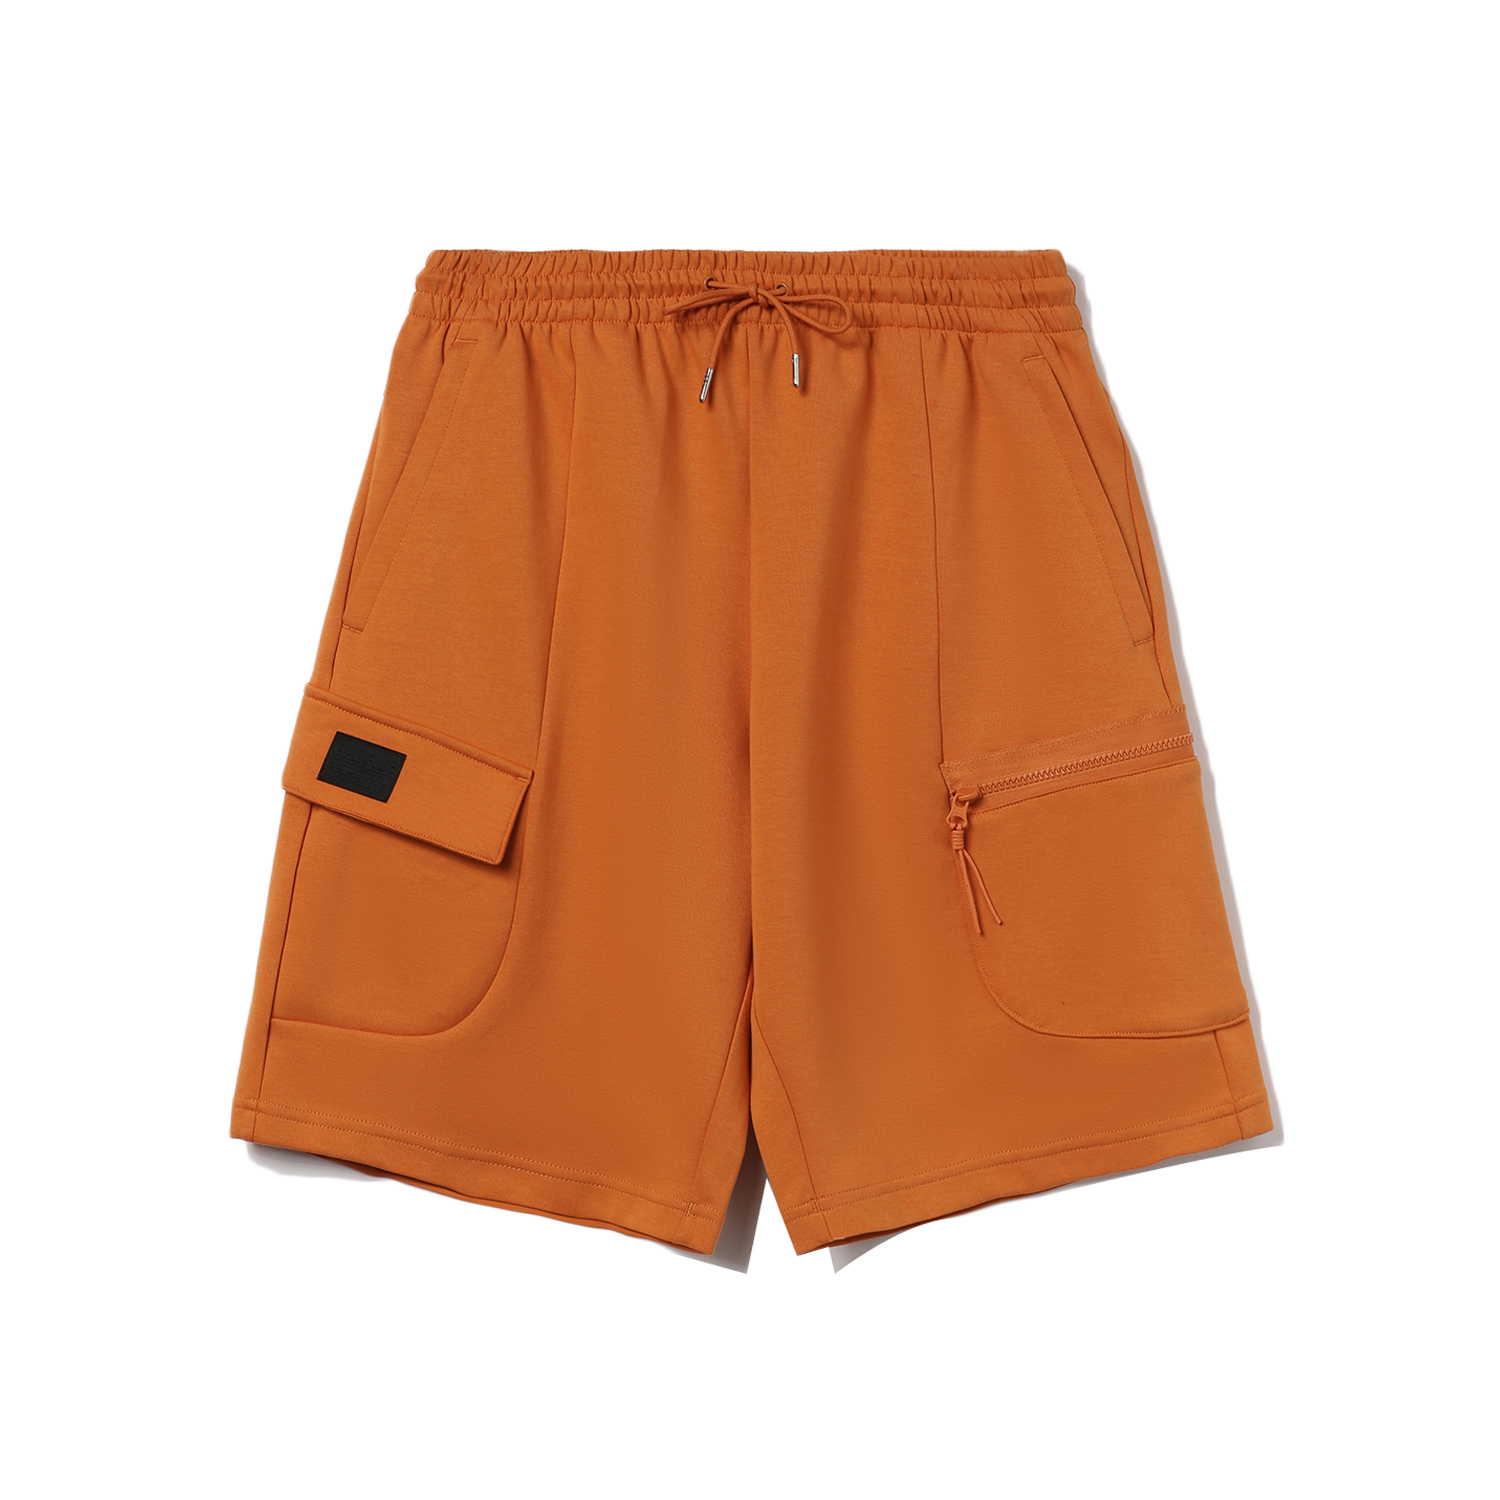 李寧反伍BADFIVE籃球系列男子寬鬆短衛褲 - 赭橙色